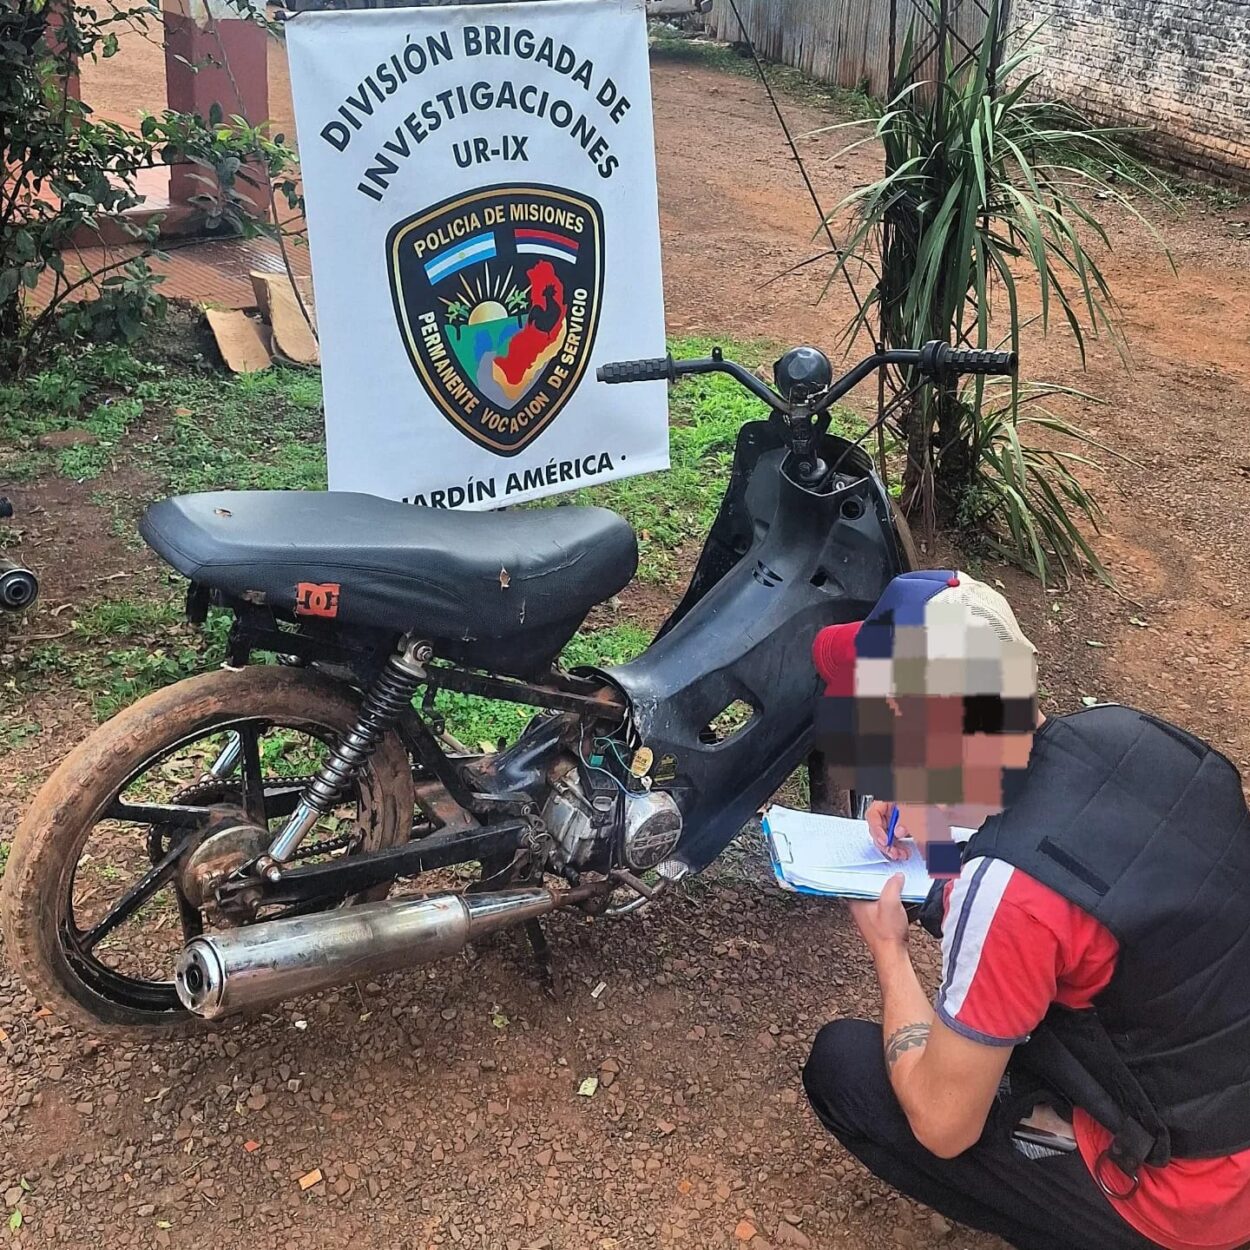 Continúan detenidos los integrantes de la red de robo y venta de motos en Jardín América: Son 7 los rodados recuperados imagen-4